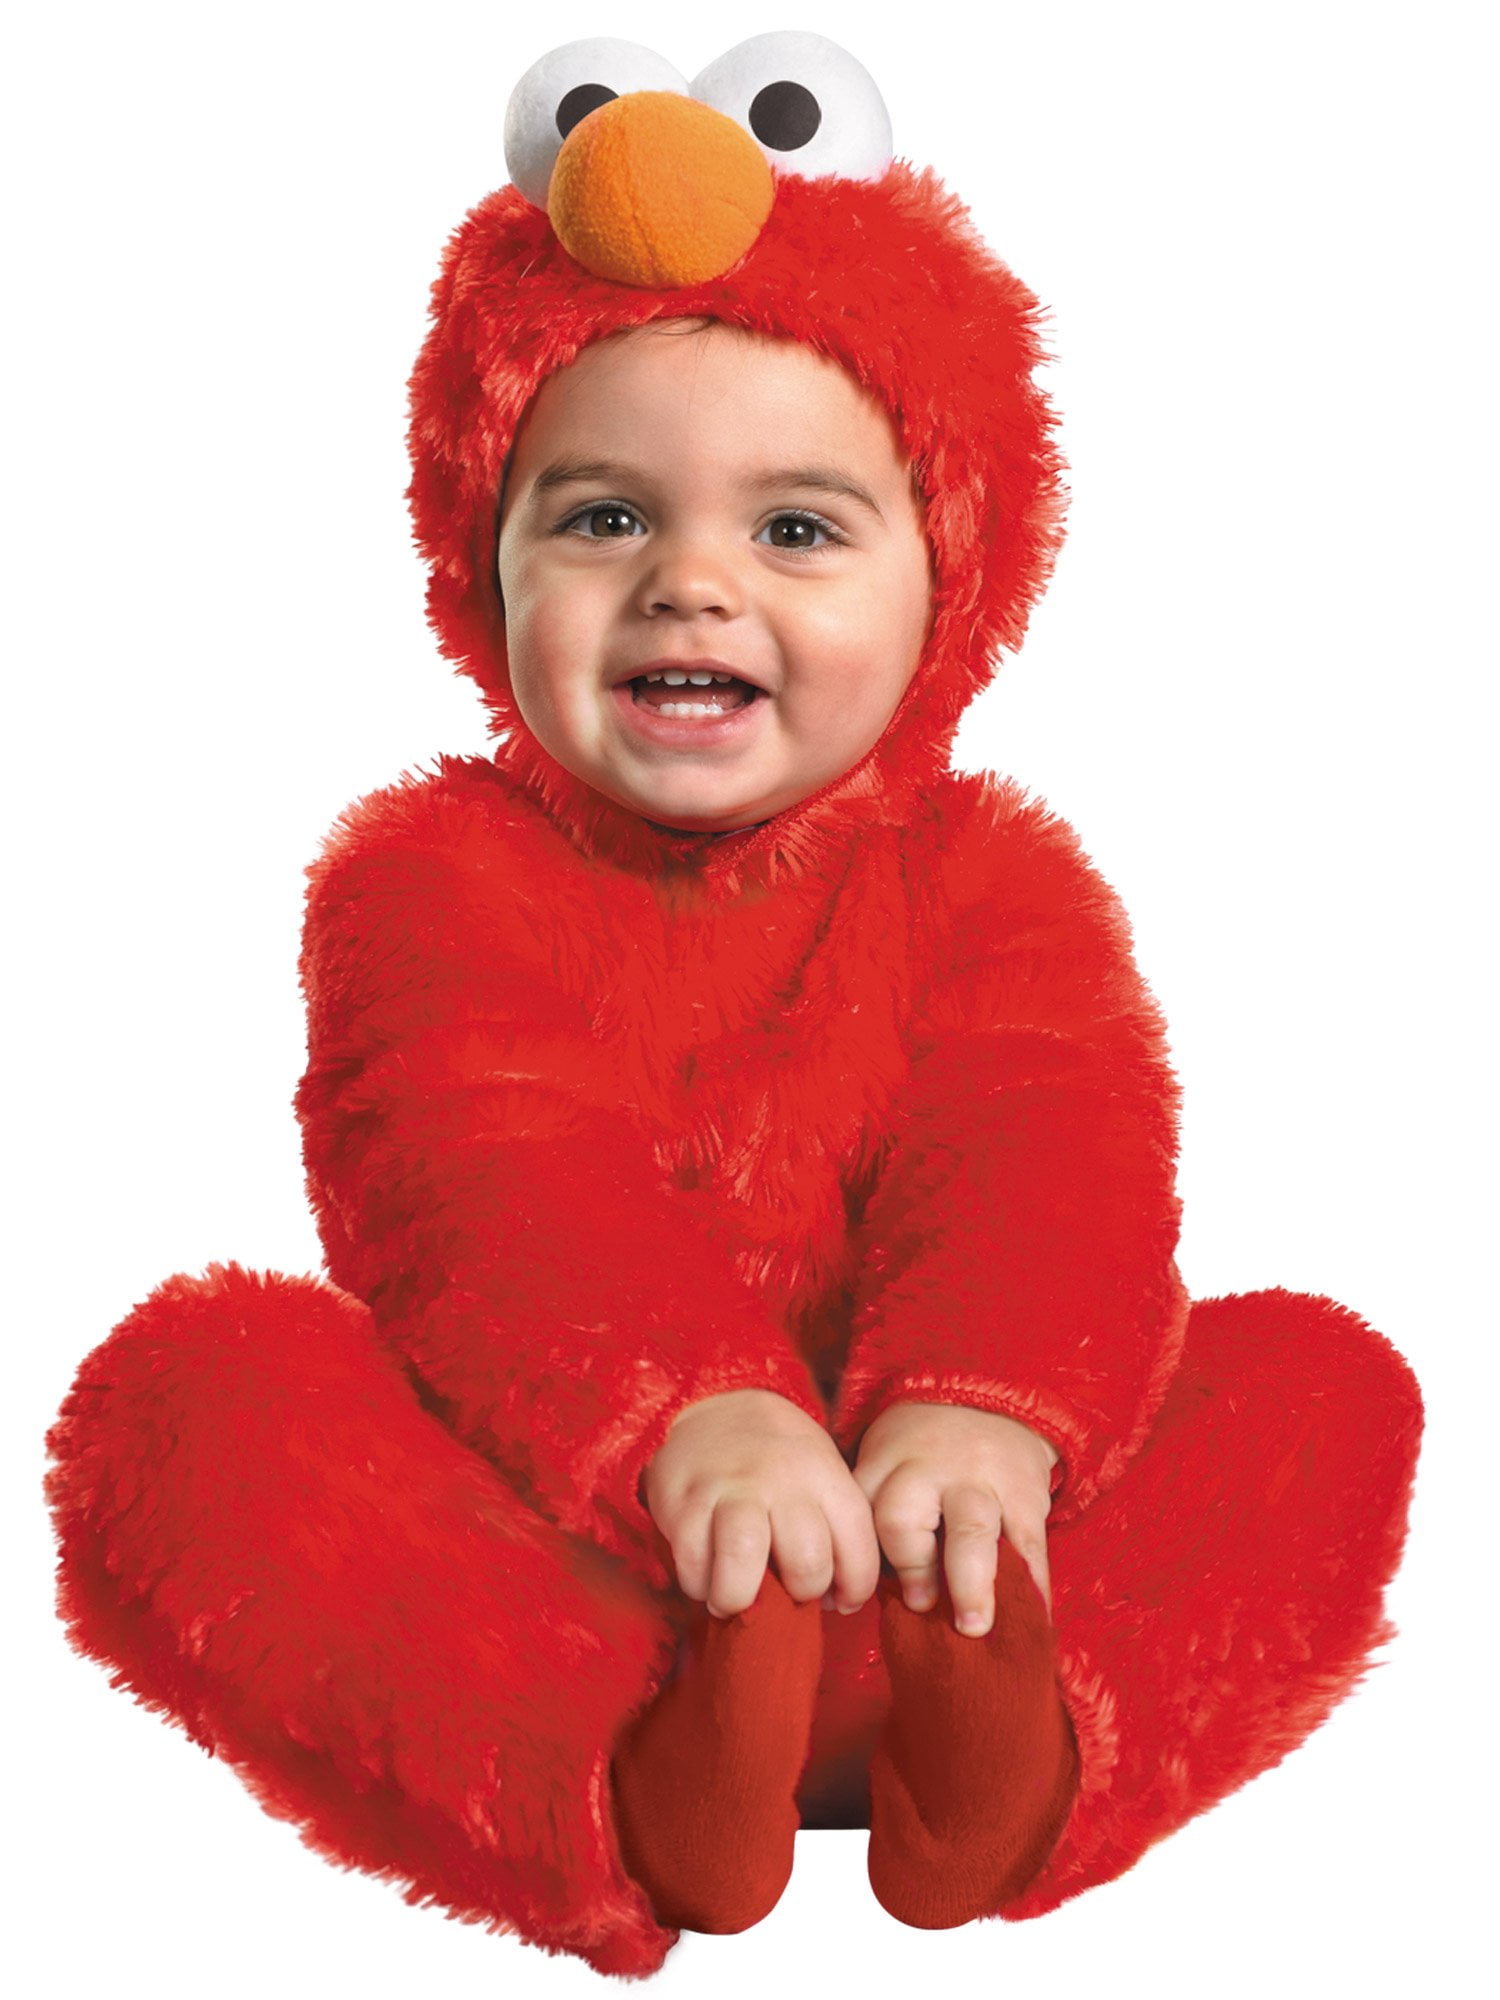 svag peregrination blad Elmo Comfy Fur Costume - Small (2T) - Walmart.com